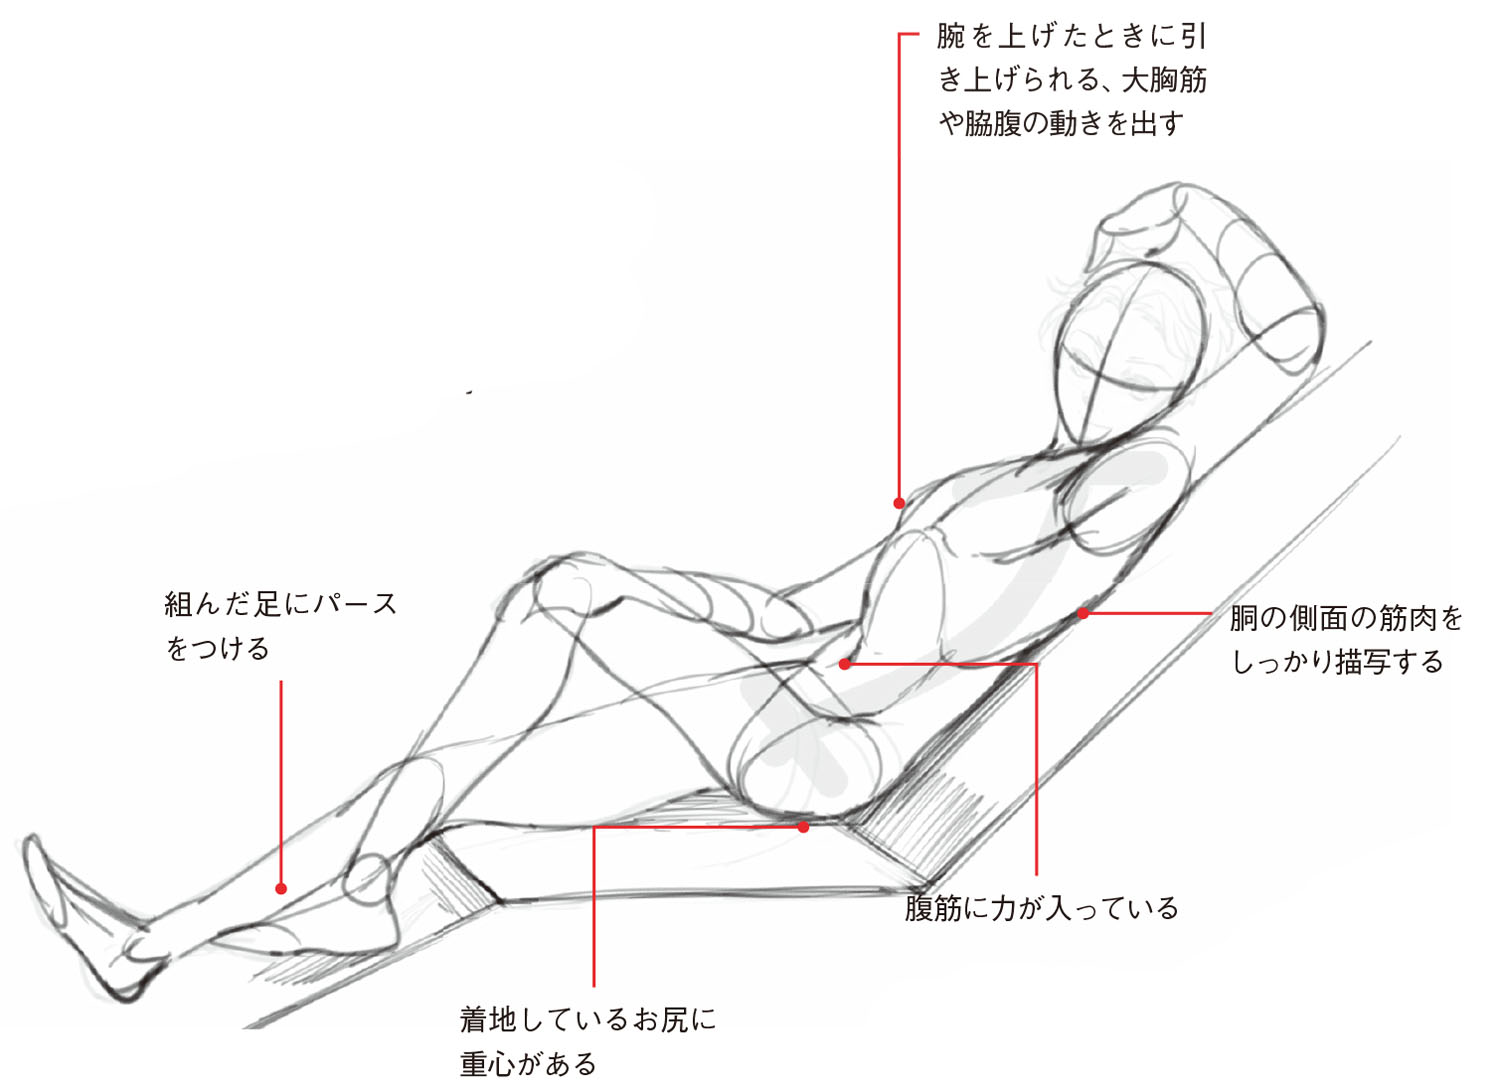 寝ポーズ基本編 男性の 寝姿勢 は直線的 筋肉の量感と動きを意識して描こう 動きのあるポーズの描き方 男性キャラクター編 第6回 Pictures